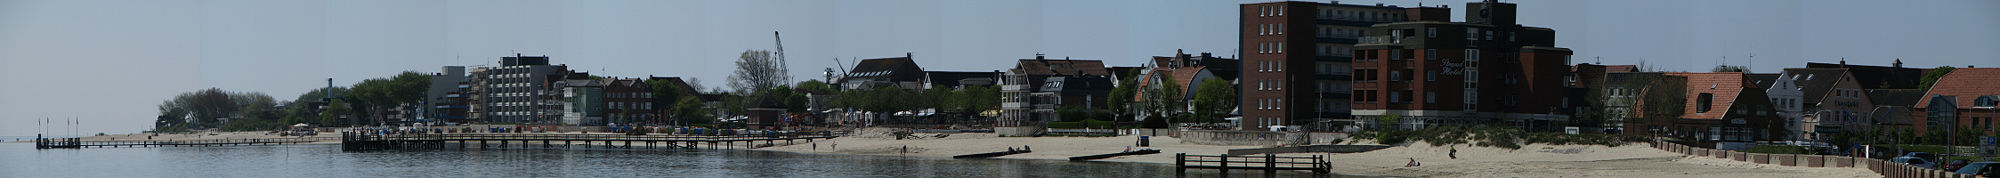 Panoramabild der Strandpromenade von Wyk aus dem Jahr 2008